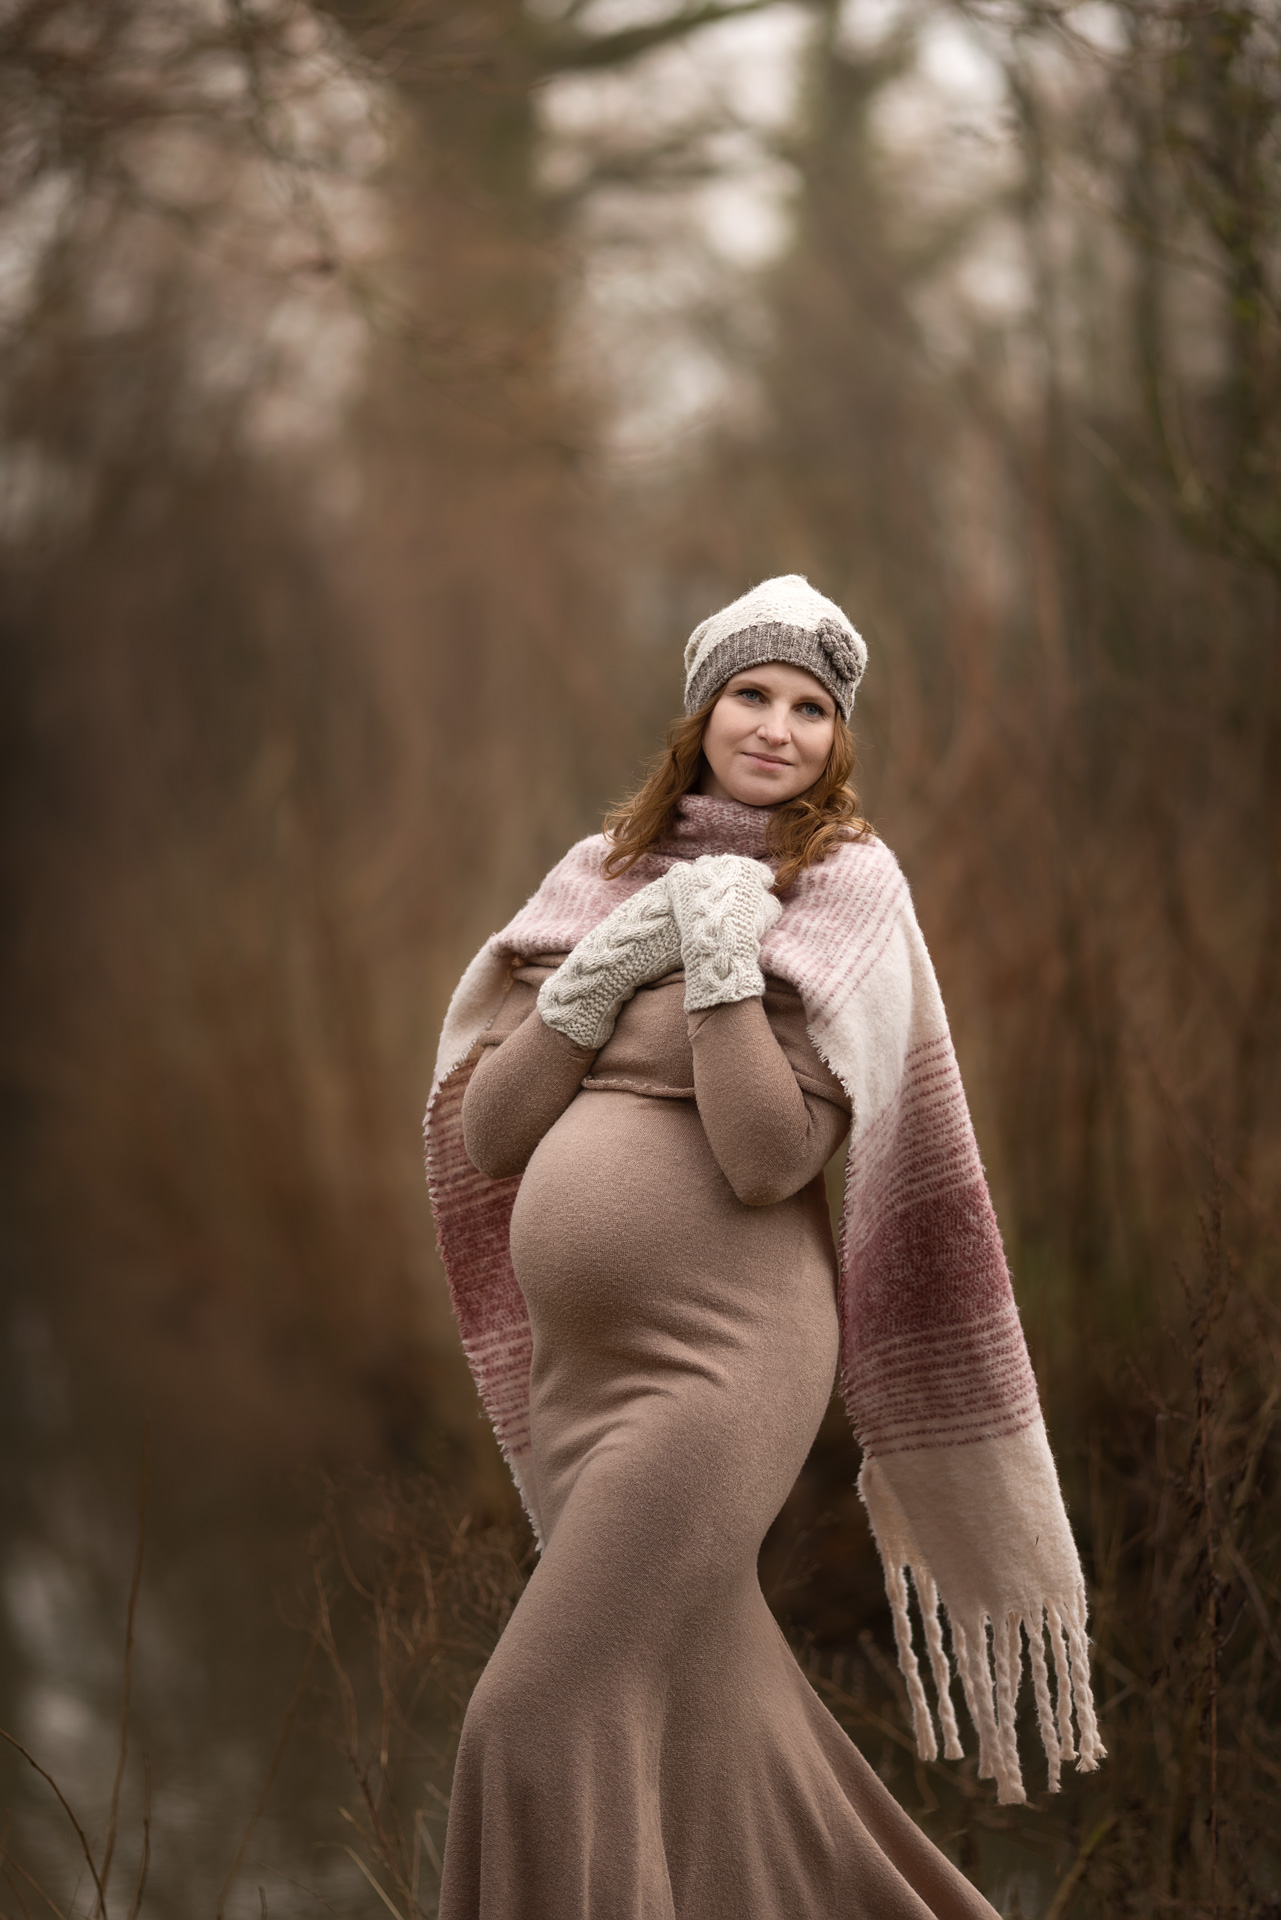 Babybauchfotografie im beigen Kleid mit Wollmütze und Schal in Winterlandschaft